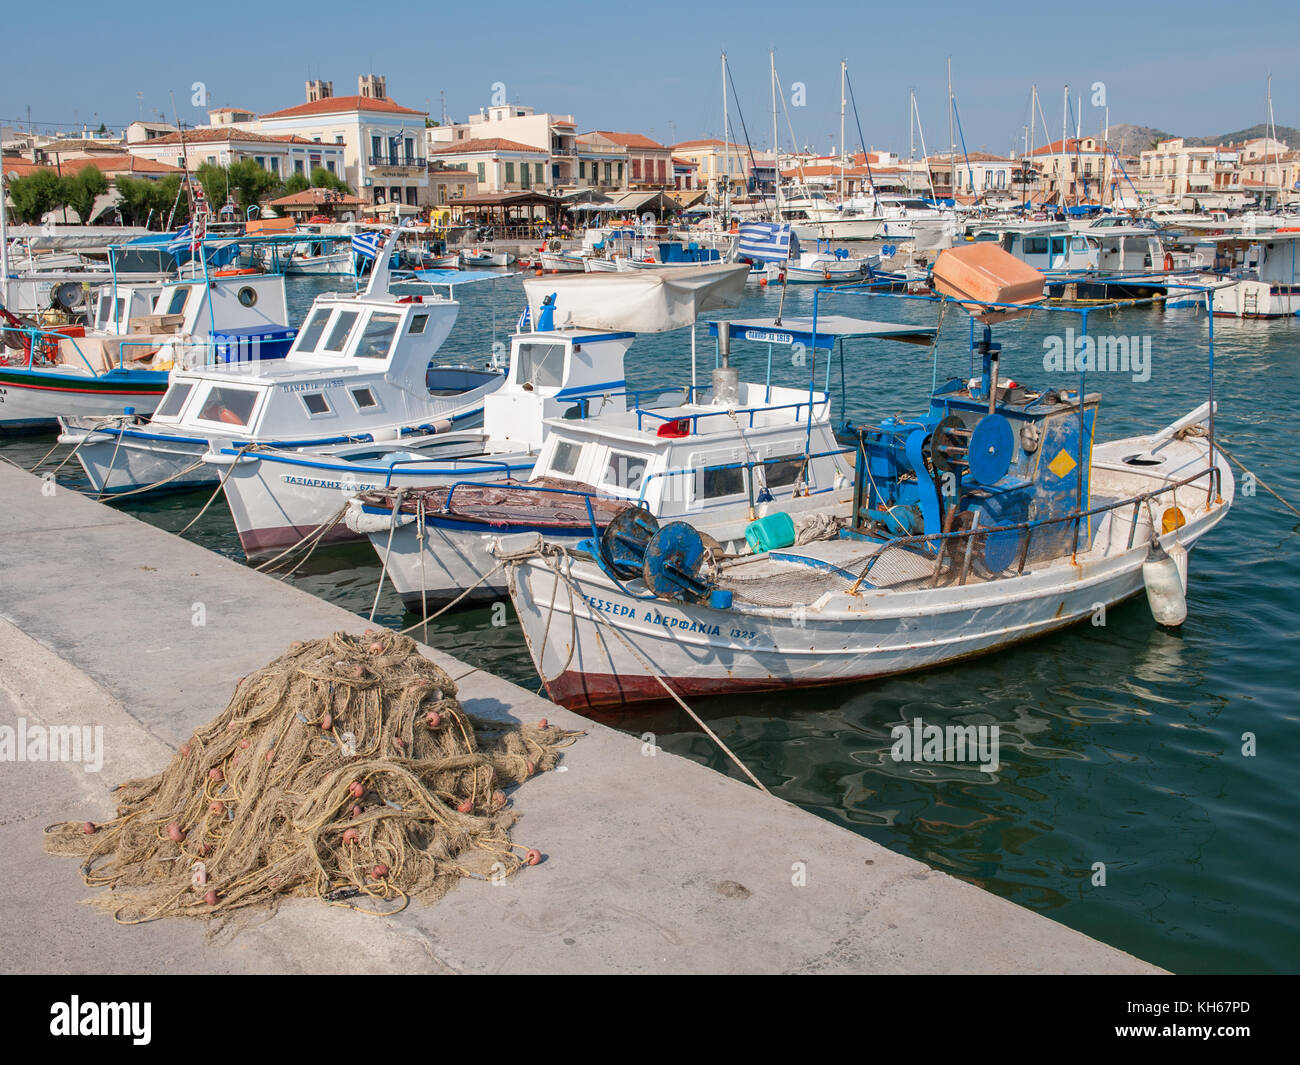 Aegina porto in una giornata di sole. aegina è un'isola greca nel mare Egeo appartenenti alle isole del golfo Saronico. Foto Stock